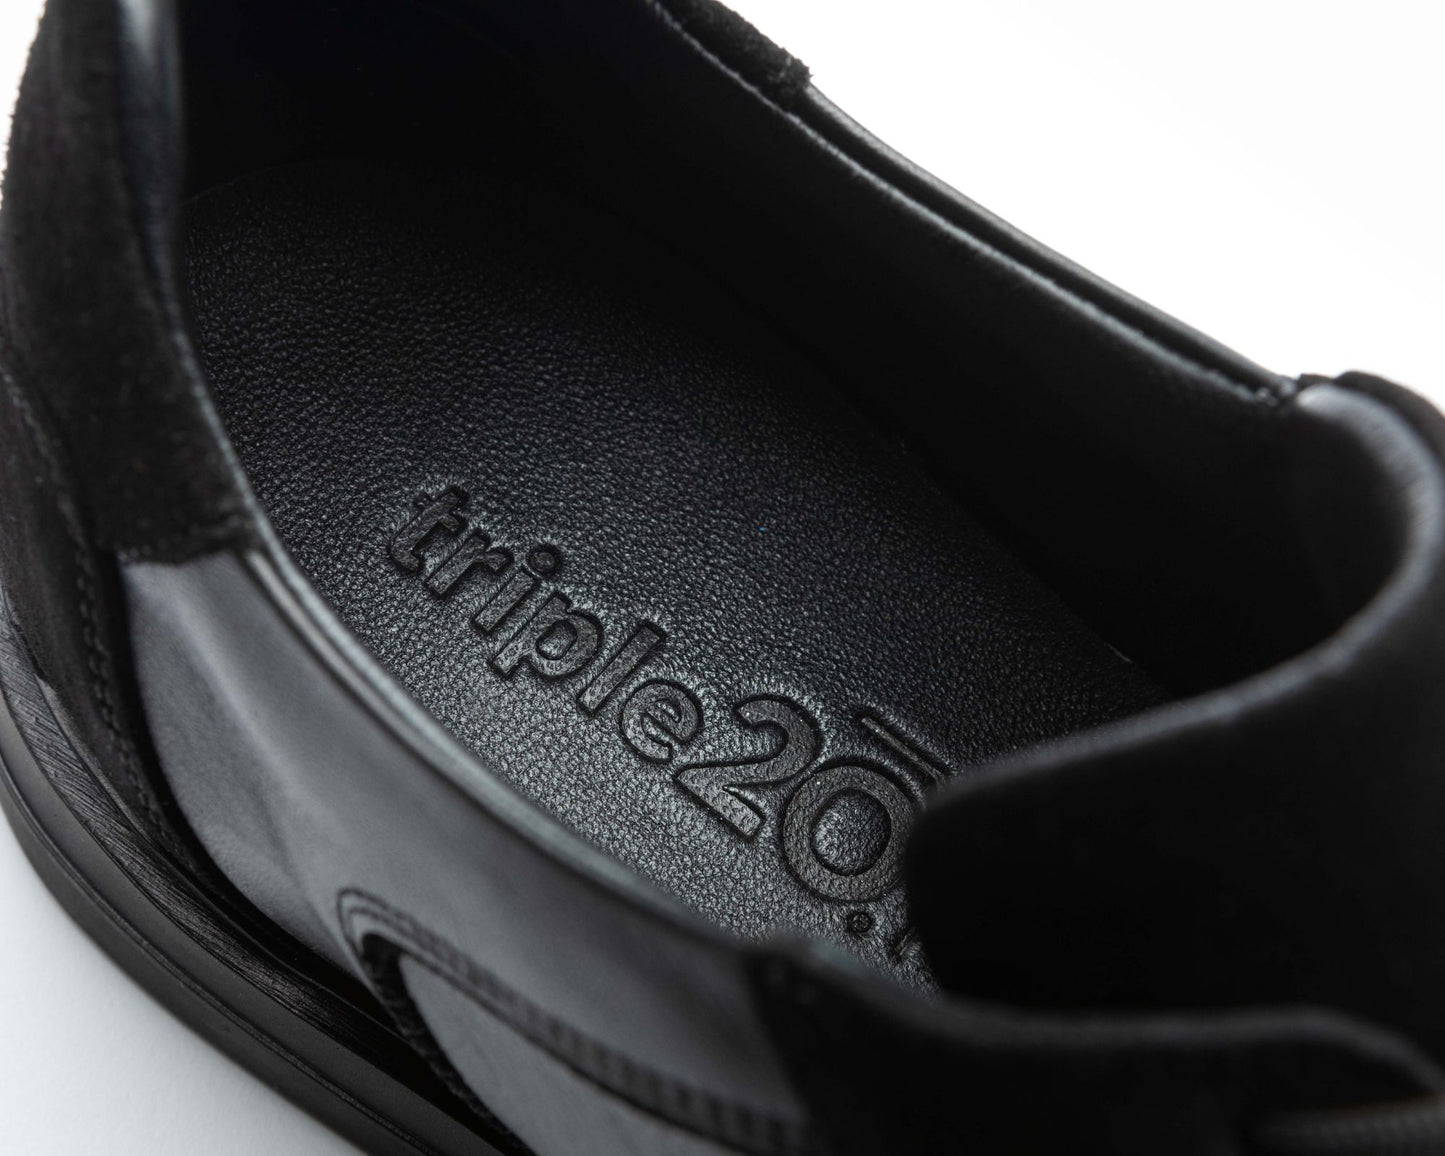 Detailaufnahme der schwarzen, gepolsterten Leder-Decksohle eines hochwertigen triple20 Dartschuhs. Das Logo ist sehr sorgfältig eingeprägt und man kann die Hochwertigkeit deutlich erkennen. Die Decksohle und das Futter wirken sehr bequem.